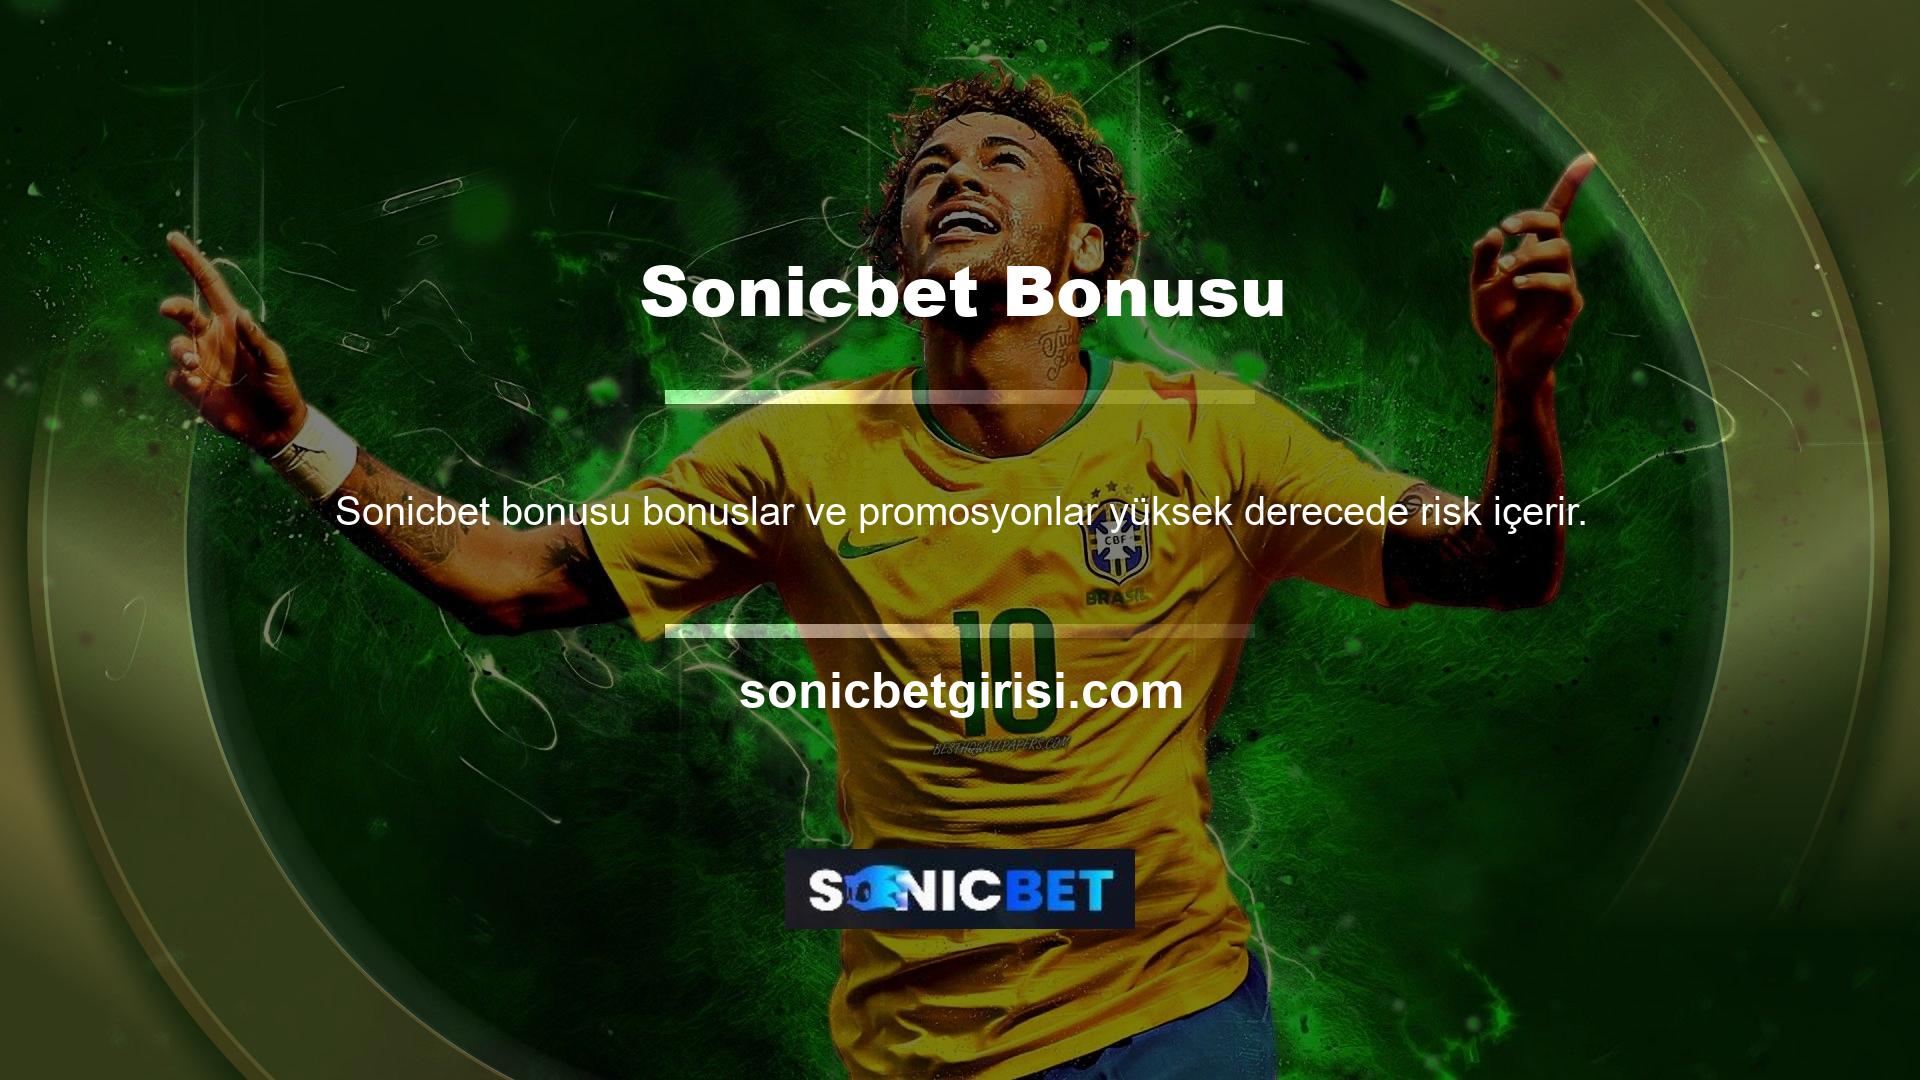 Promosyon, Sonicbet Bonus aboneliği satın alan ve hesabına bonus kurallarına göre para yatıran herkes tarafından değerlendirilebilir